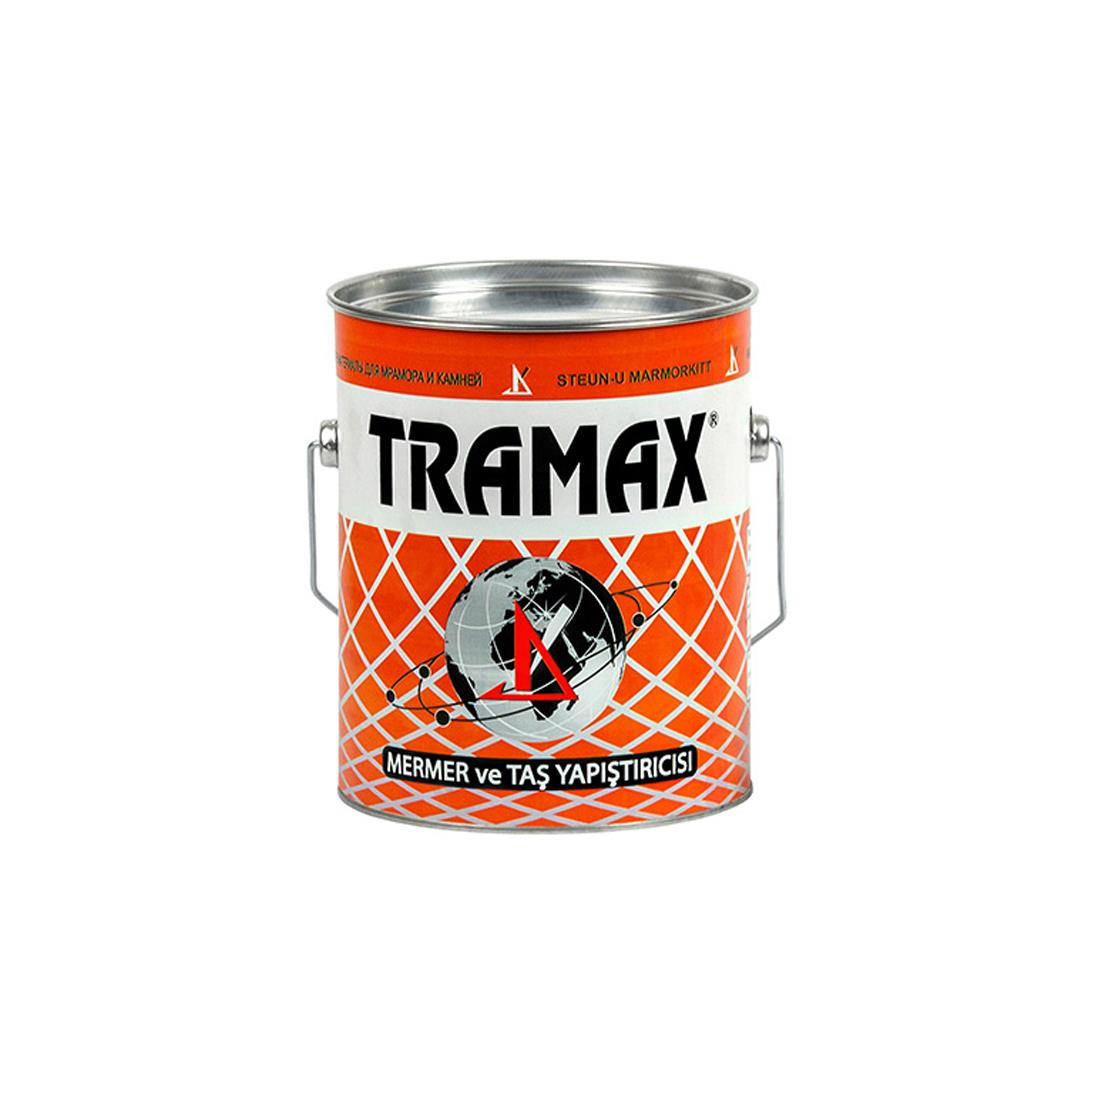 Tramax Mermer ve Taş Yapıştırıcısı - 1200 GR